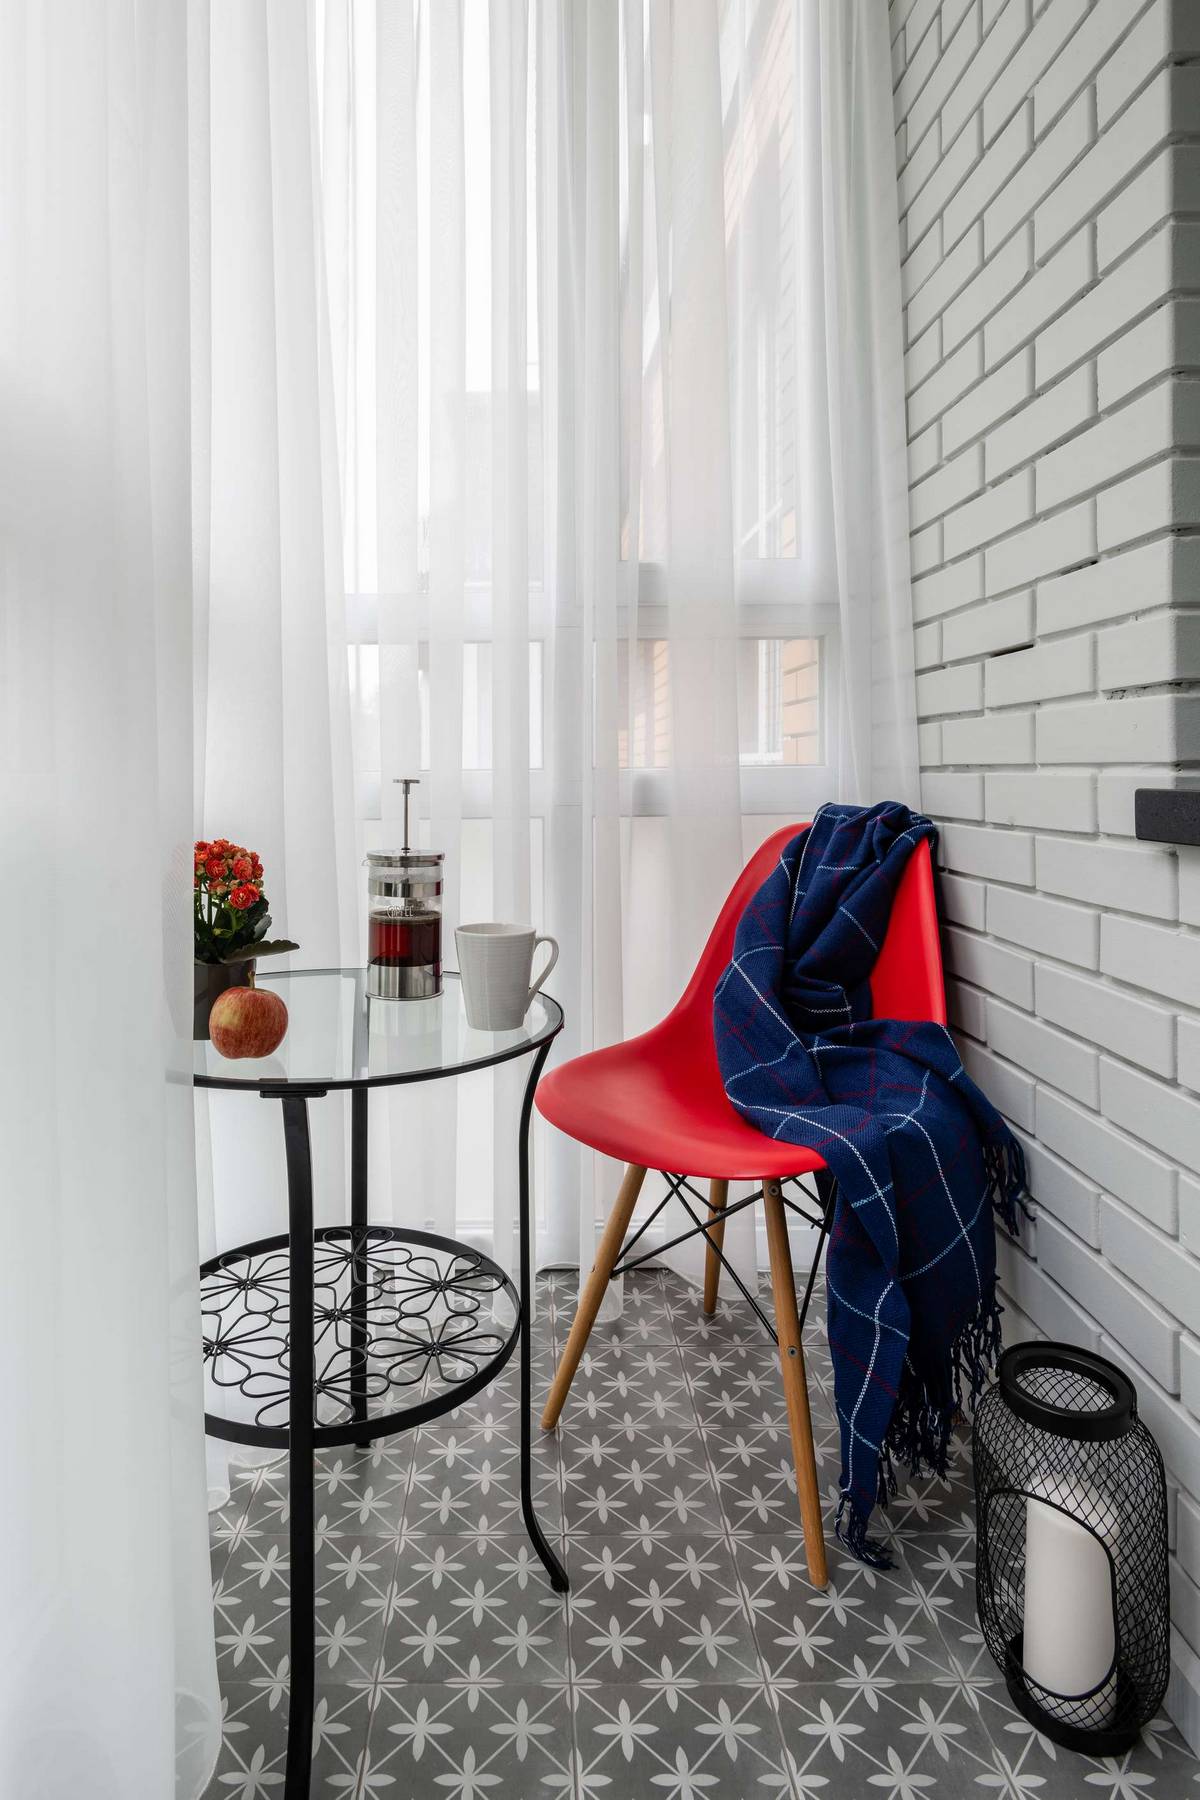 Logia trang trí theo phong cách cổ điển với tường gạch trắng, gạch bông xám, bàn nước, giỏ thắp nến kim loại sắc sảo cùng chiếc ghế đỏ nổi bật làm nơi thư giãn.